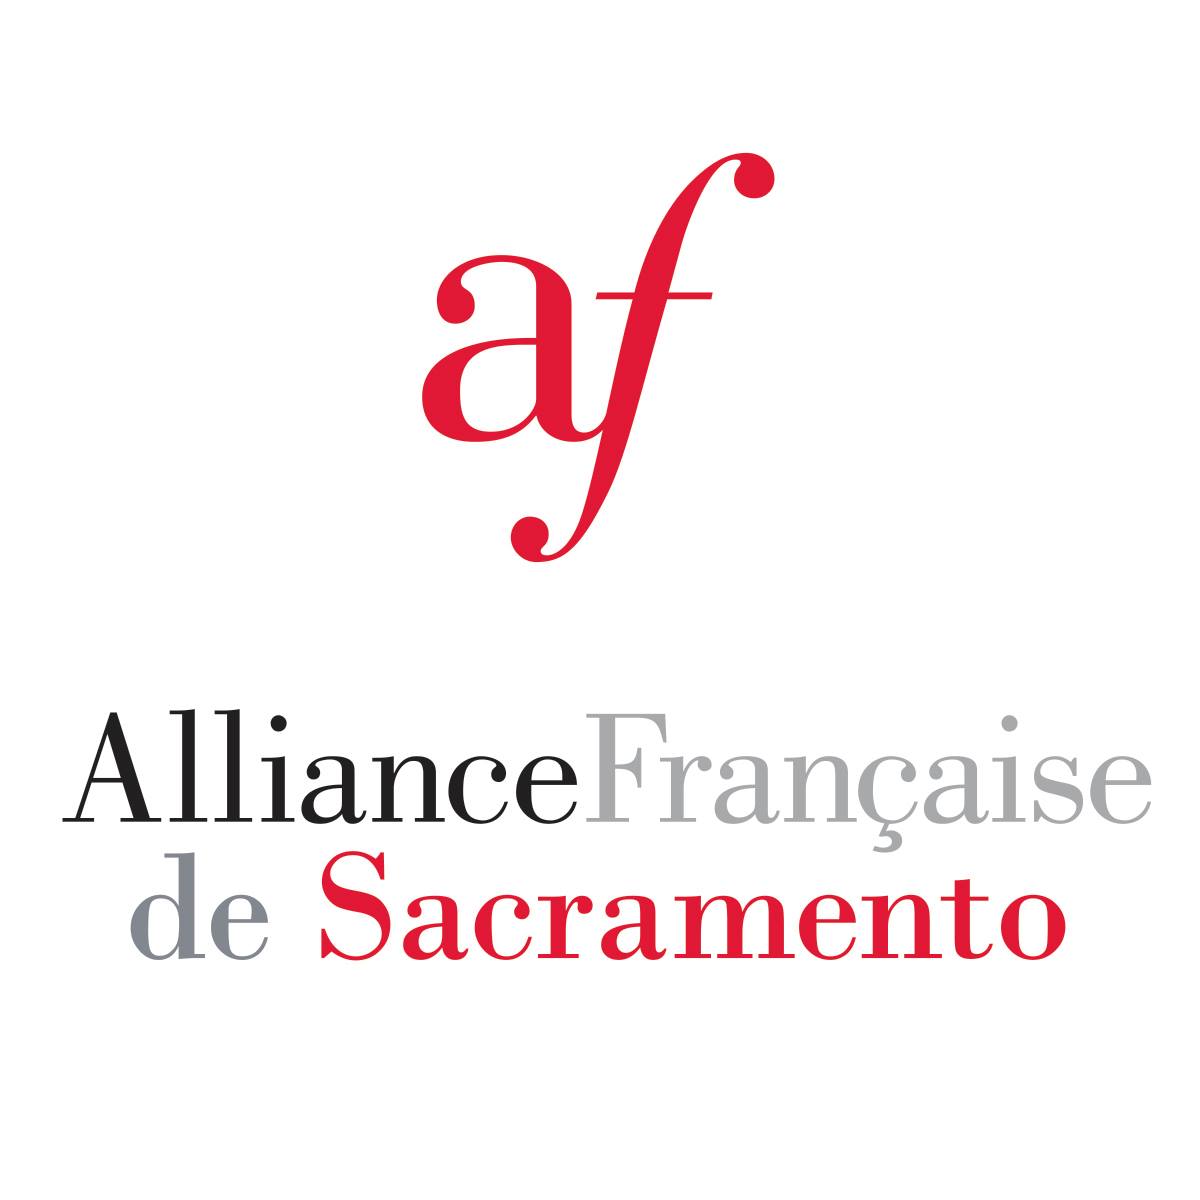 French Organization in San Diego California - Alliance Francaise de Sacramento